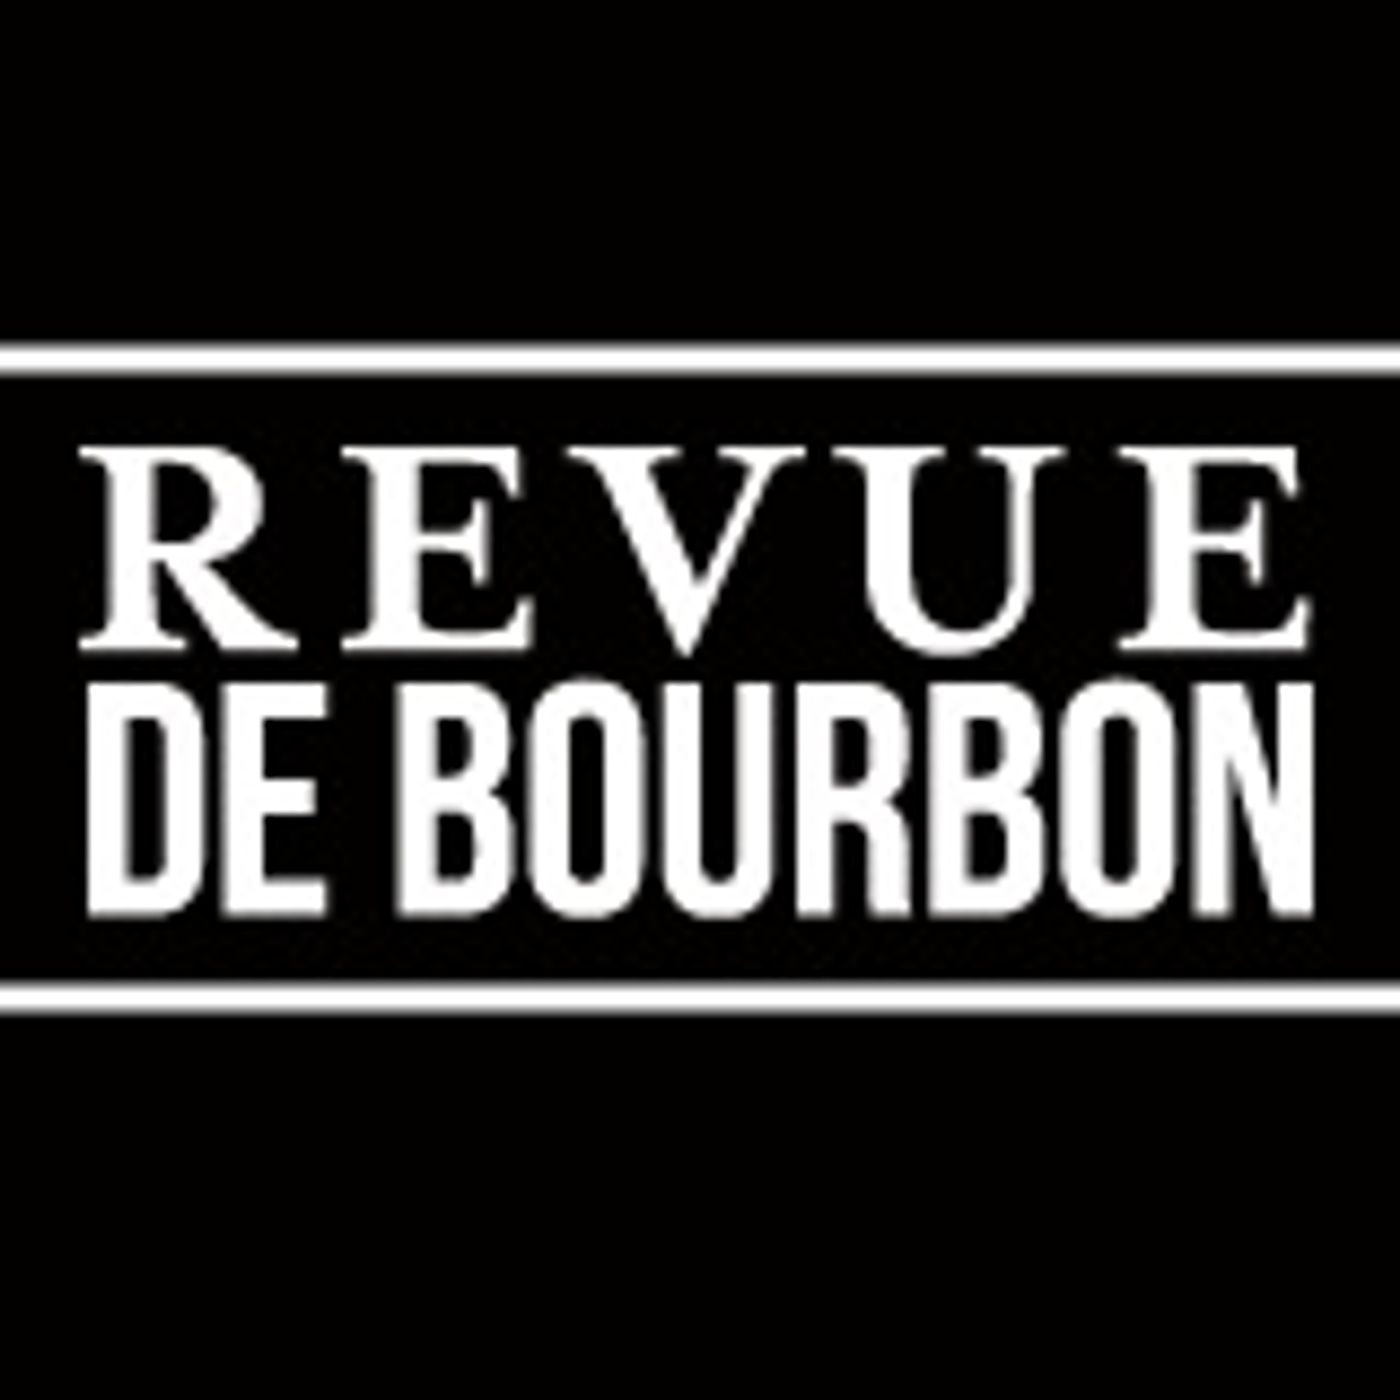 Revue de Bourbon Podcast - John J. Bowman